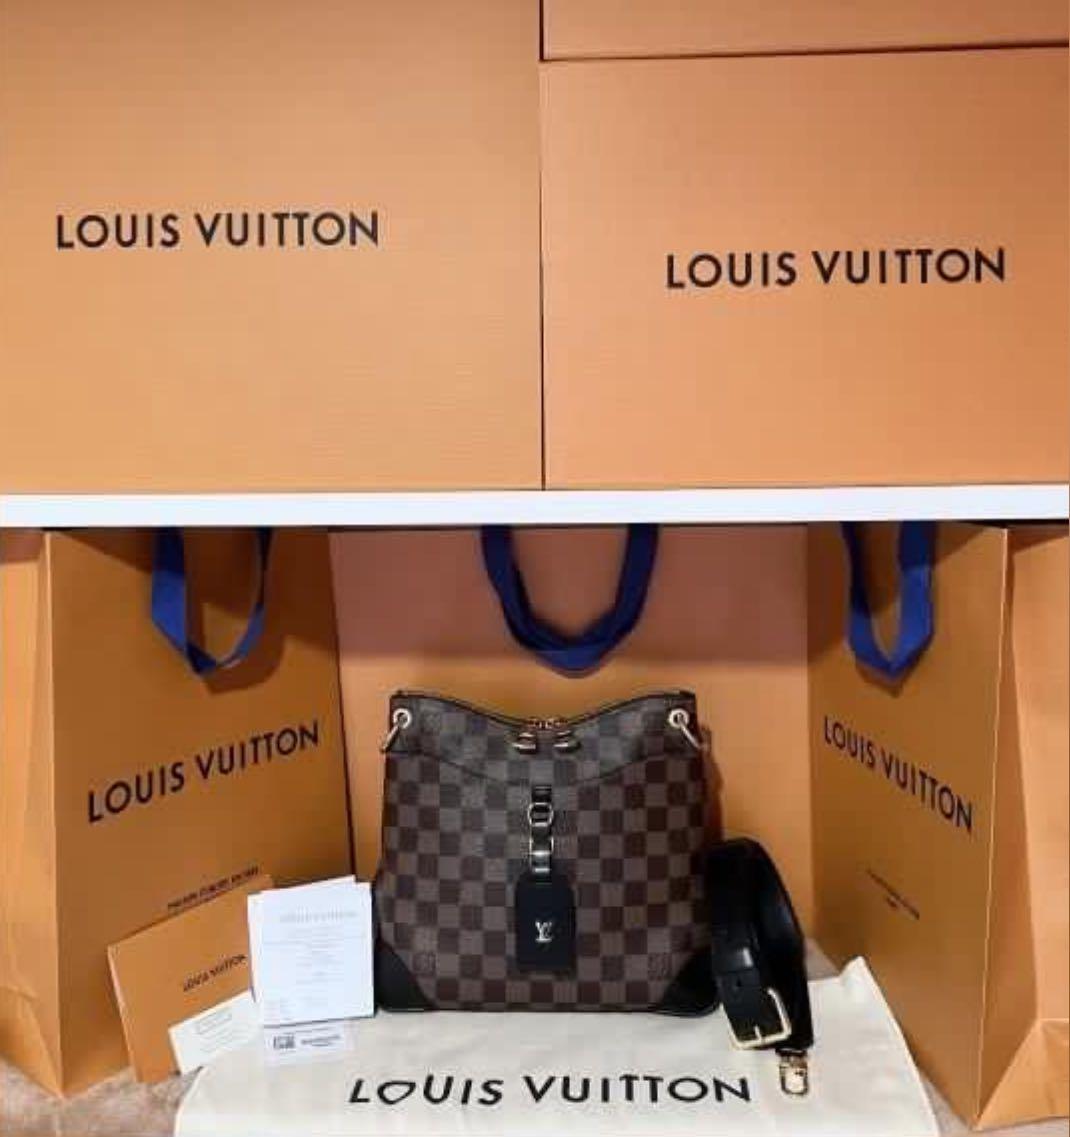 Discontinued LNIB Authentic Louis Vuitton LV Classic Monogram